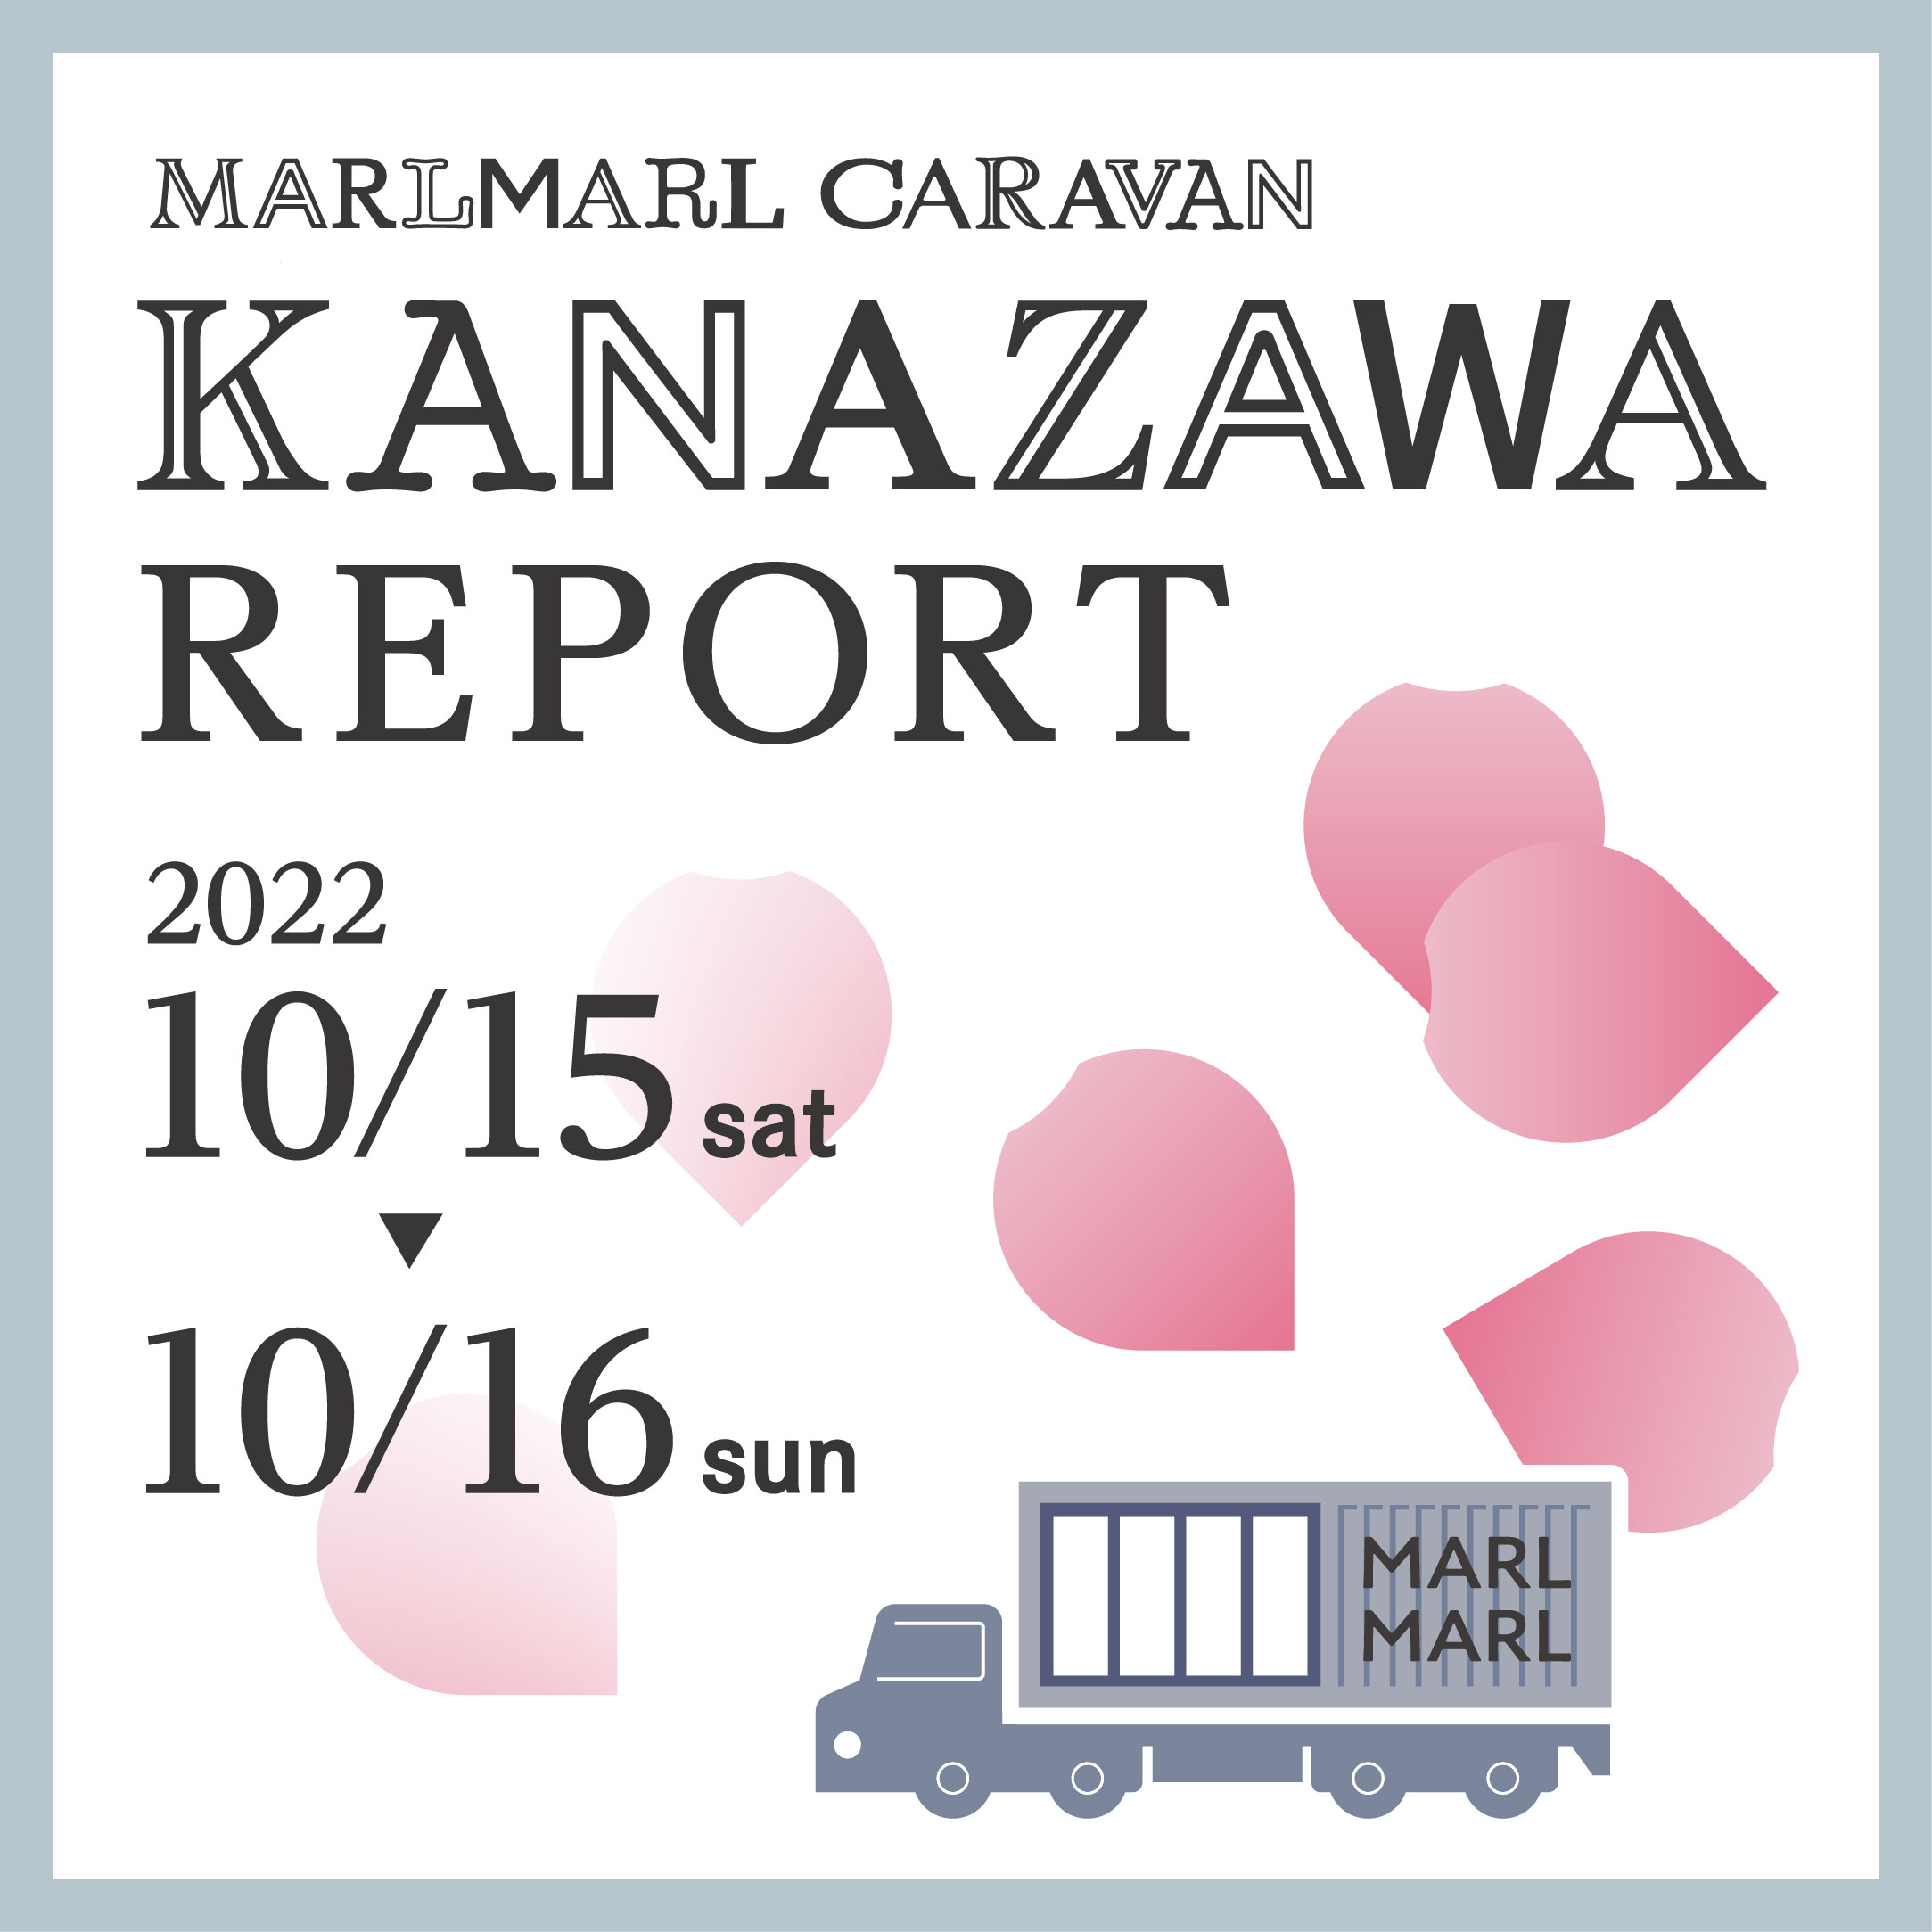 《金沢Report》MARLMARL CARAVAN 10.19(WED.)